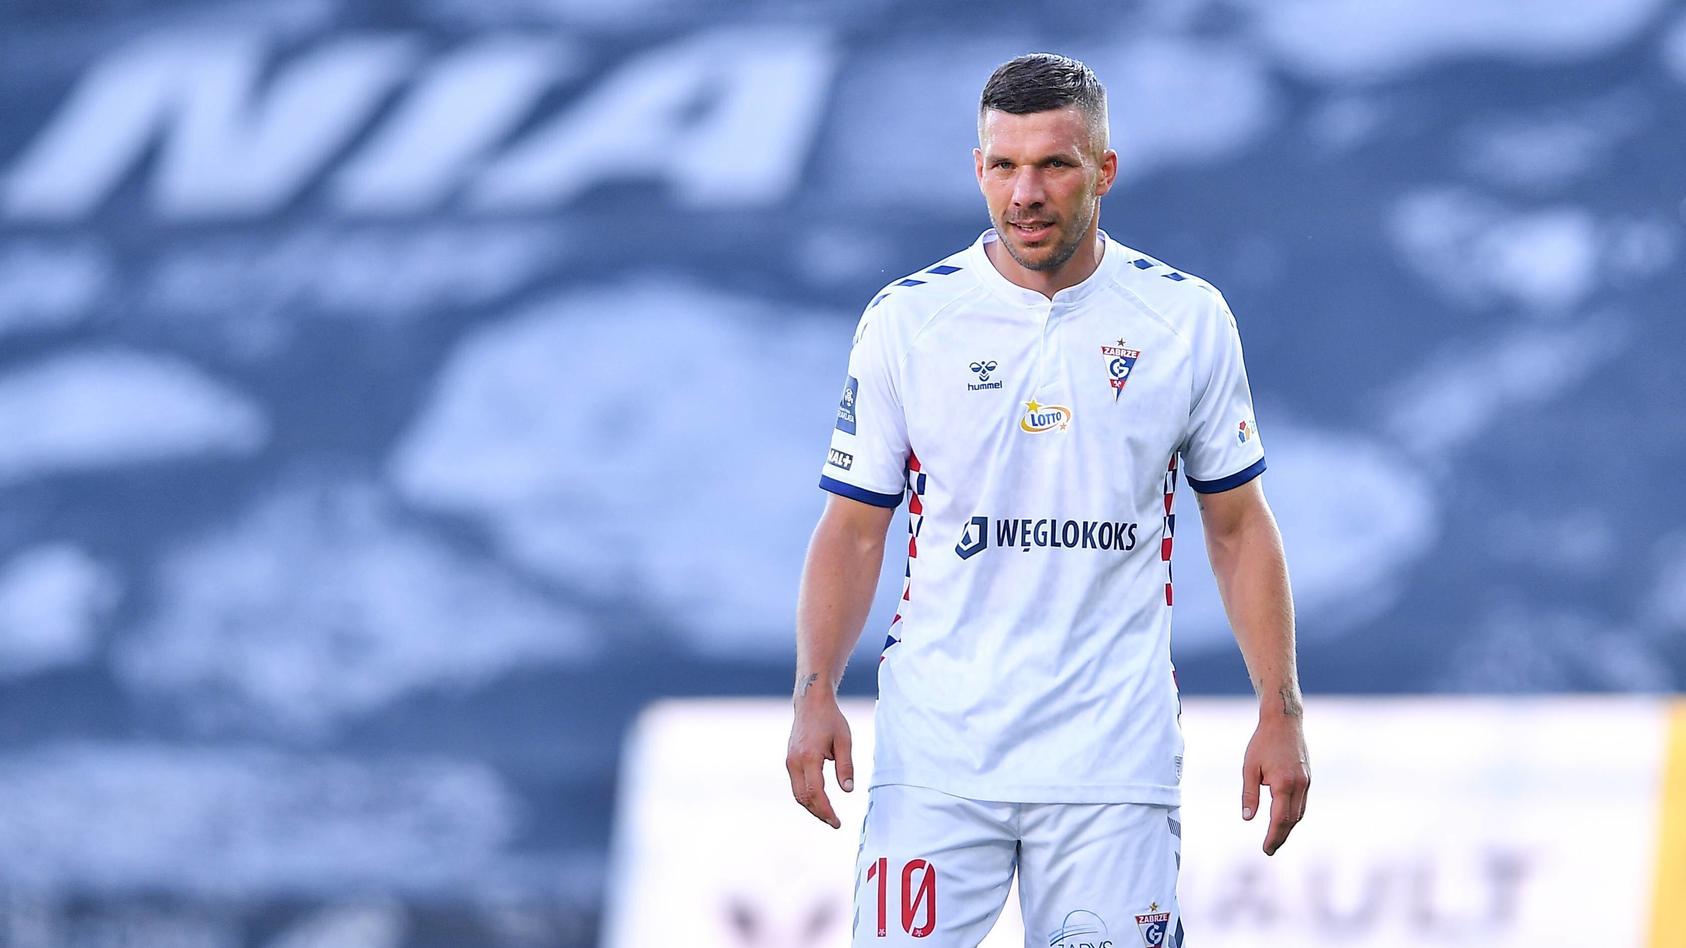 lukas-podolski-hat-zum-zweiten-mal-in-seiner-karriere-das-tor-des-jahres-erzielt